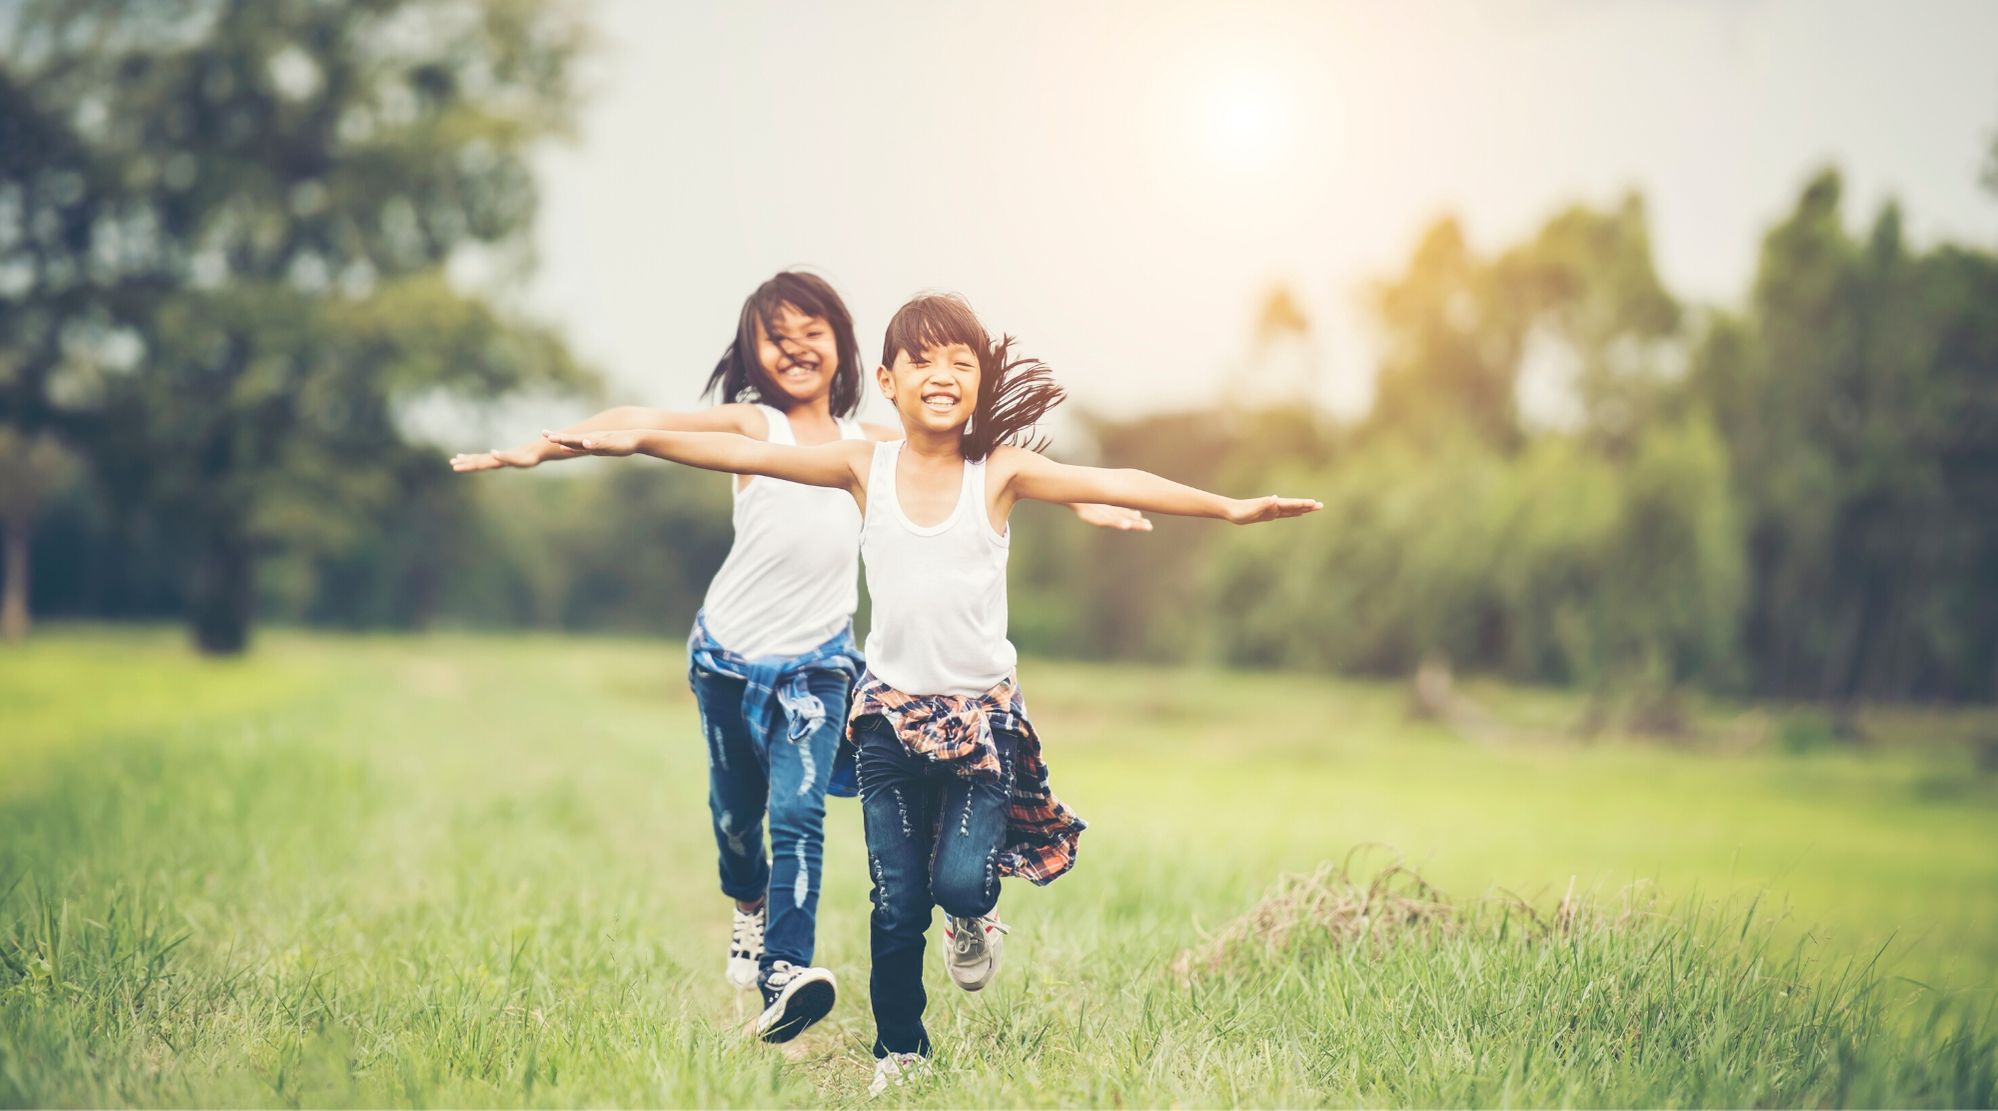 Imagem de duas crianças correndo ao ar livre. Elas estão sorrindo, de braços abertos ao redor de um campo com árvores ao fundo. Ambas as meninas têm traços asiáticos, vestem regata branca, calça jeans e blusa xadrez amarrada na cintura.